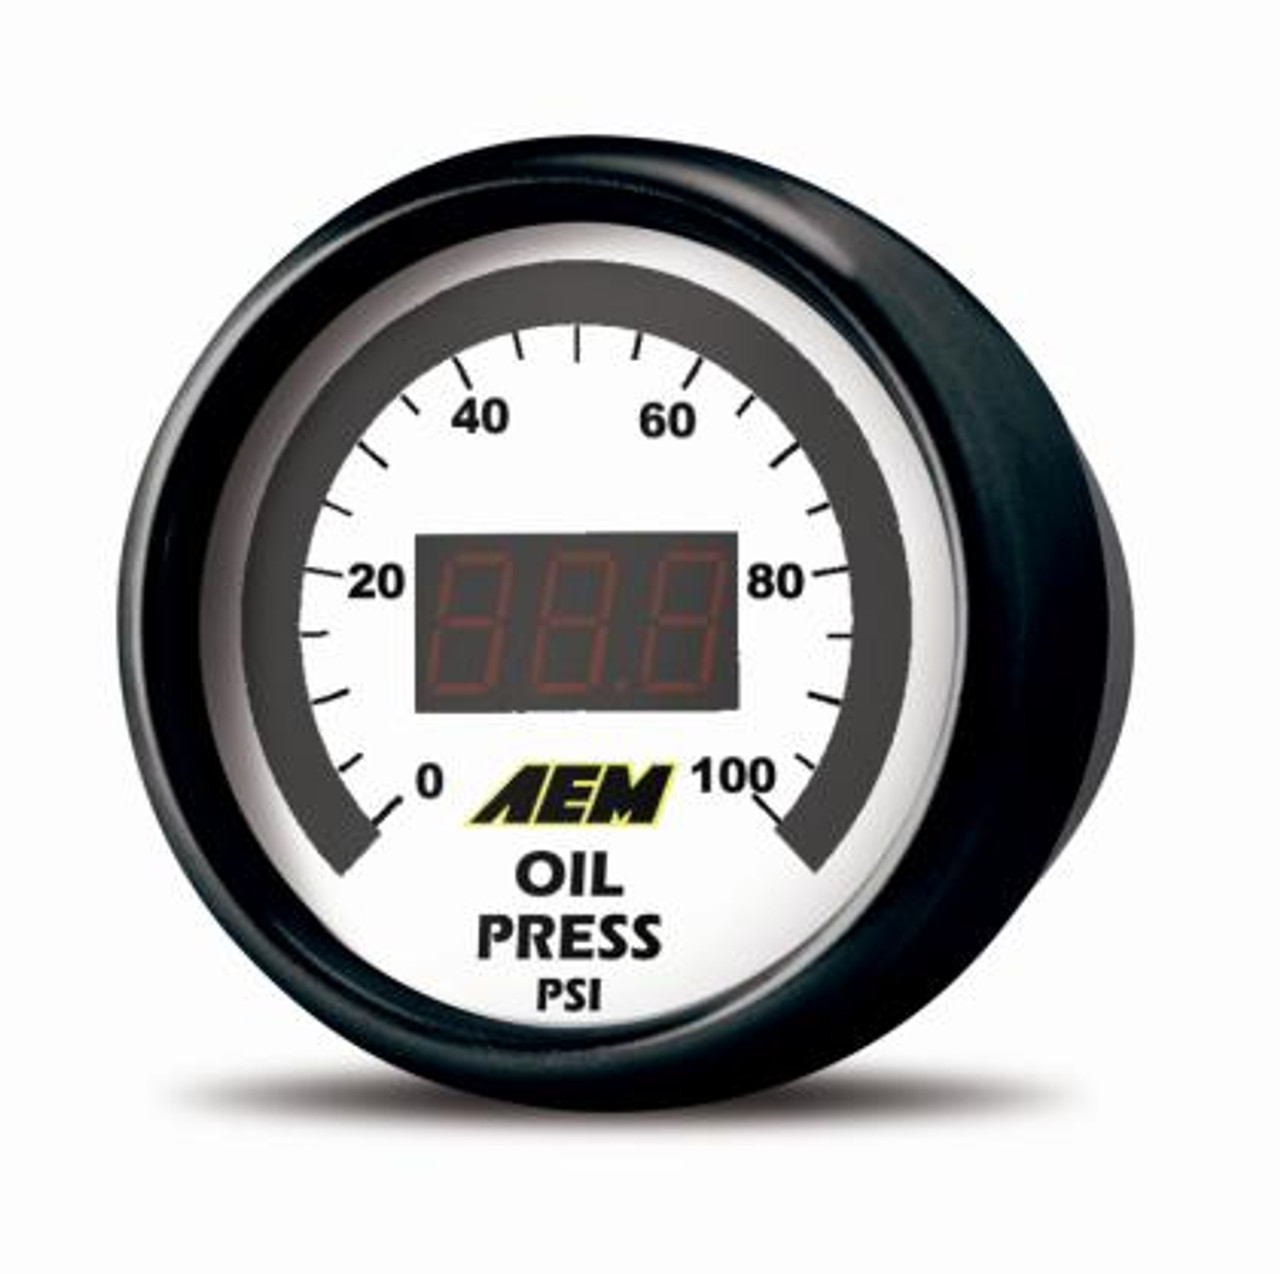 AEM 52mm Pressure (Oil or Fuel) Digital Gauge